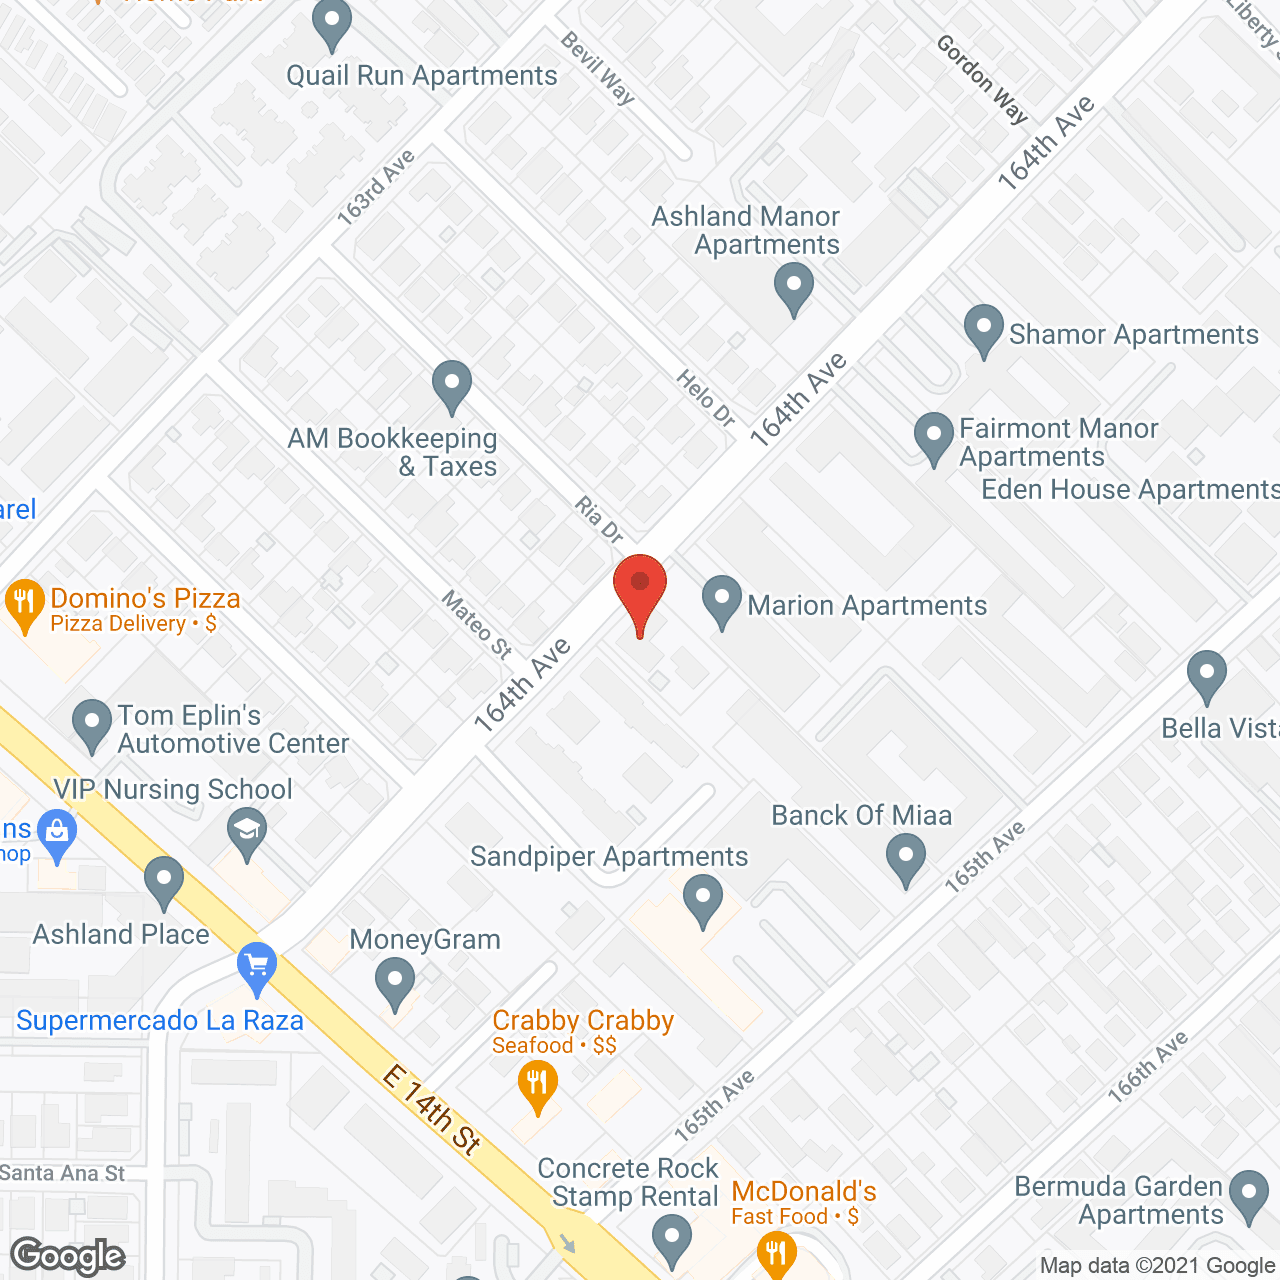 Mori Manor in google map